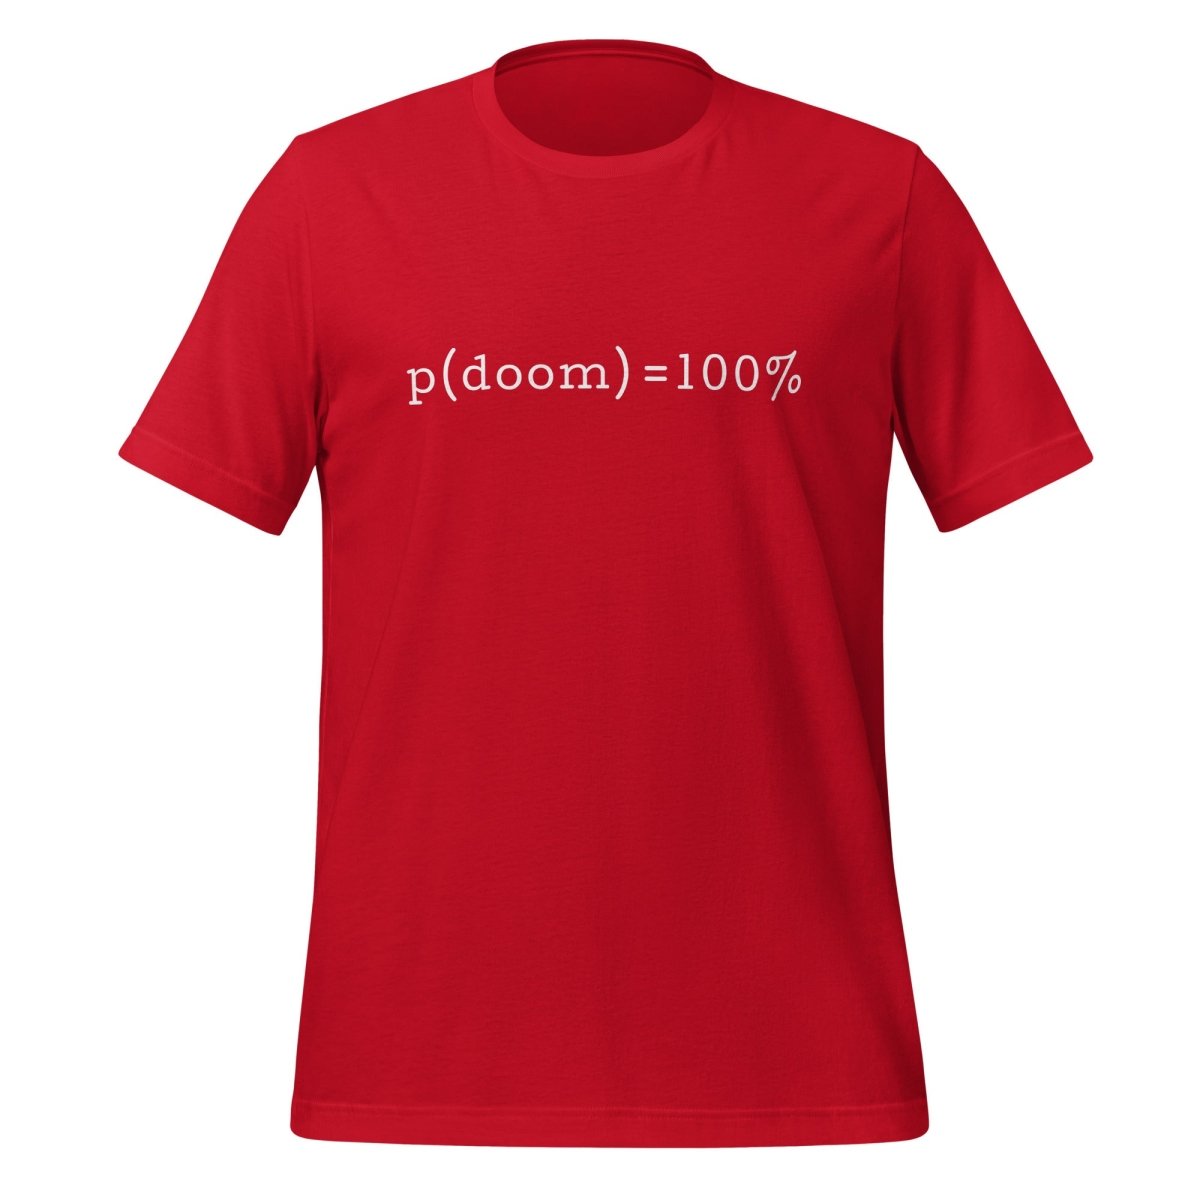 p(doom) = 100% T - Shirt (unisex) - Red - AI Store